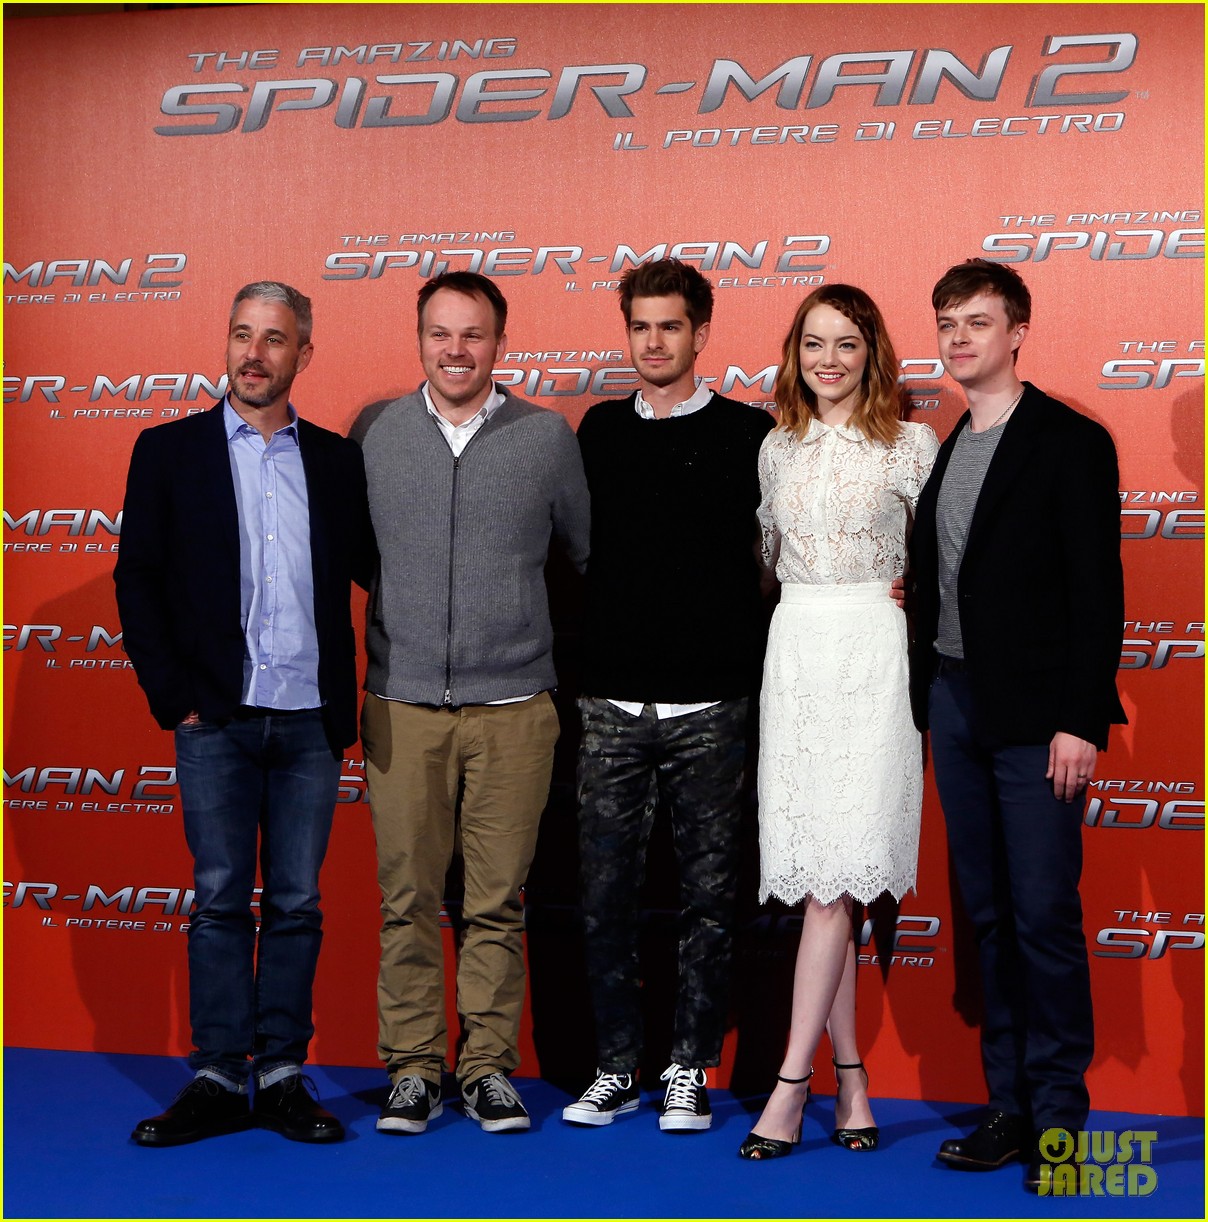 صور النجمة إيما ستون في عرض فيلم Spider-Man 2 في روما